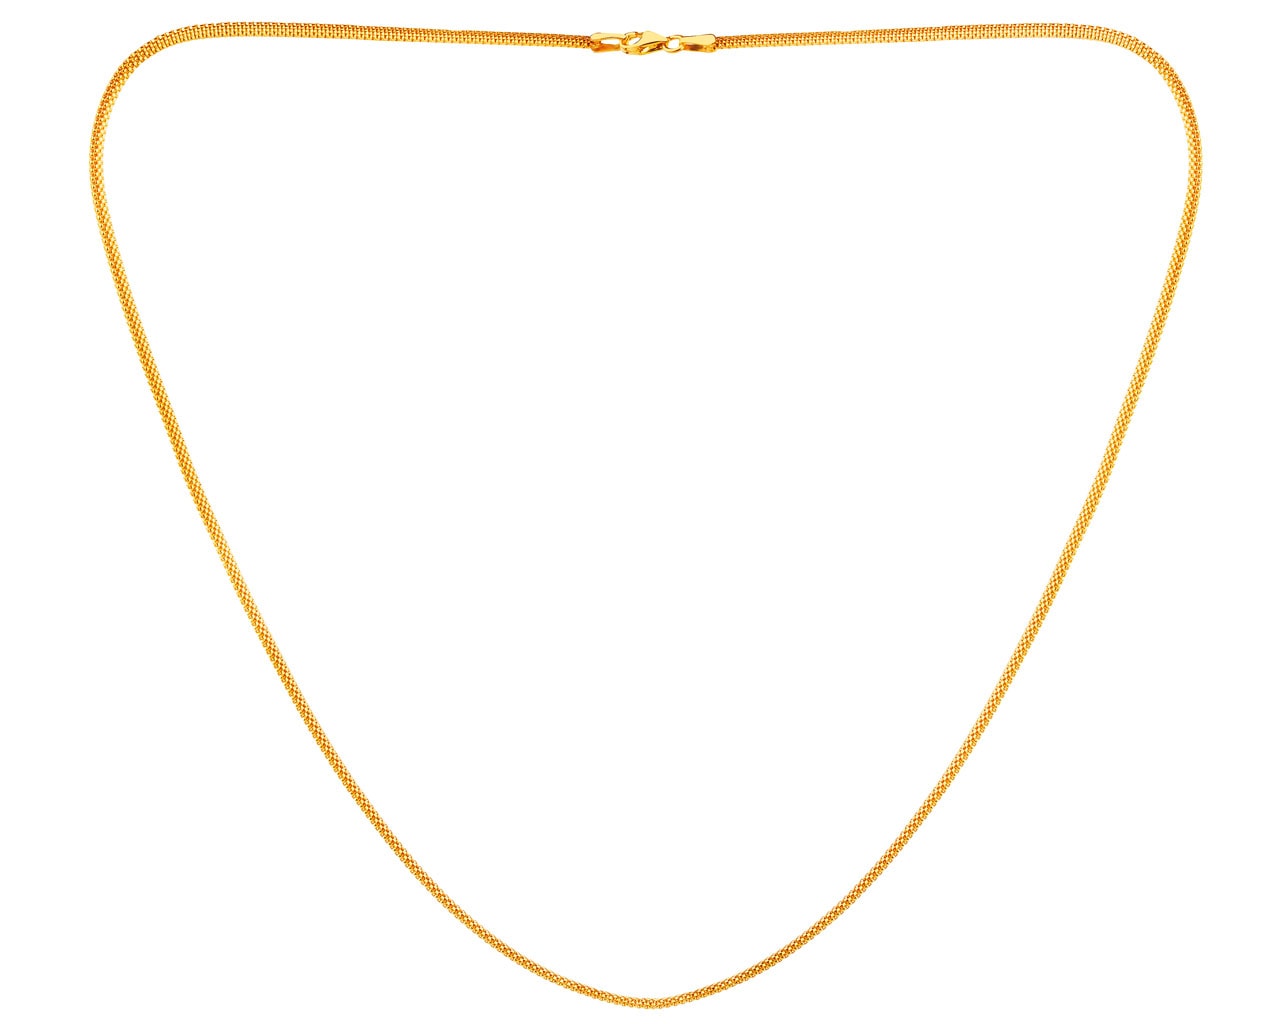 A 5g Fine Gold (.999.99) Ingot Pendant, Cased in 14K Gol… | Drouot.com